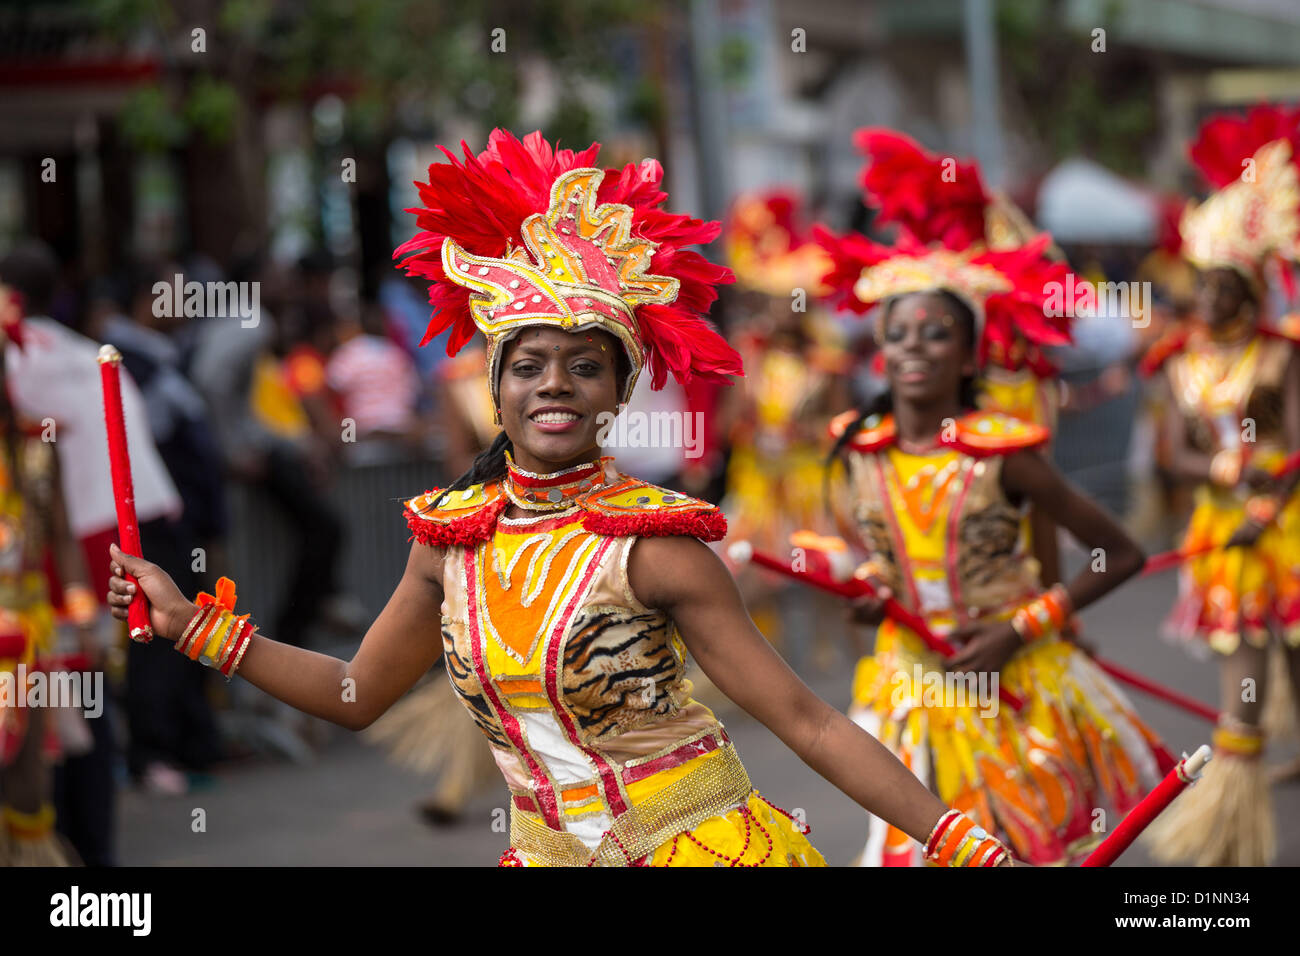 Ballerini in costume festeggiare il nuovo anno con il Junkanoo Parade su Gennaio 1, 2013 a Nassau, Bahamas. Il carnevale come festival è celebrato nelle prime ore del nuovo anno e che durerà fino a tarda mattinata e risale alla schiavitù giorni. Foto Stock